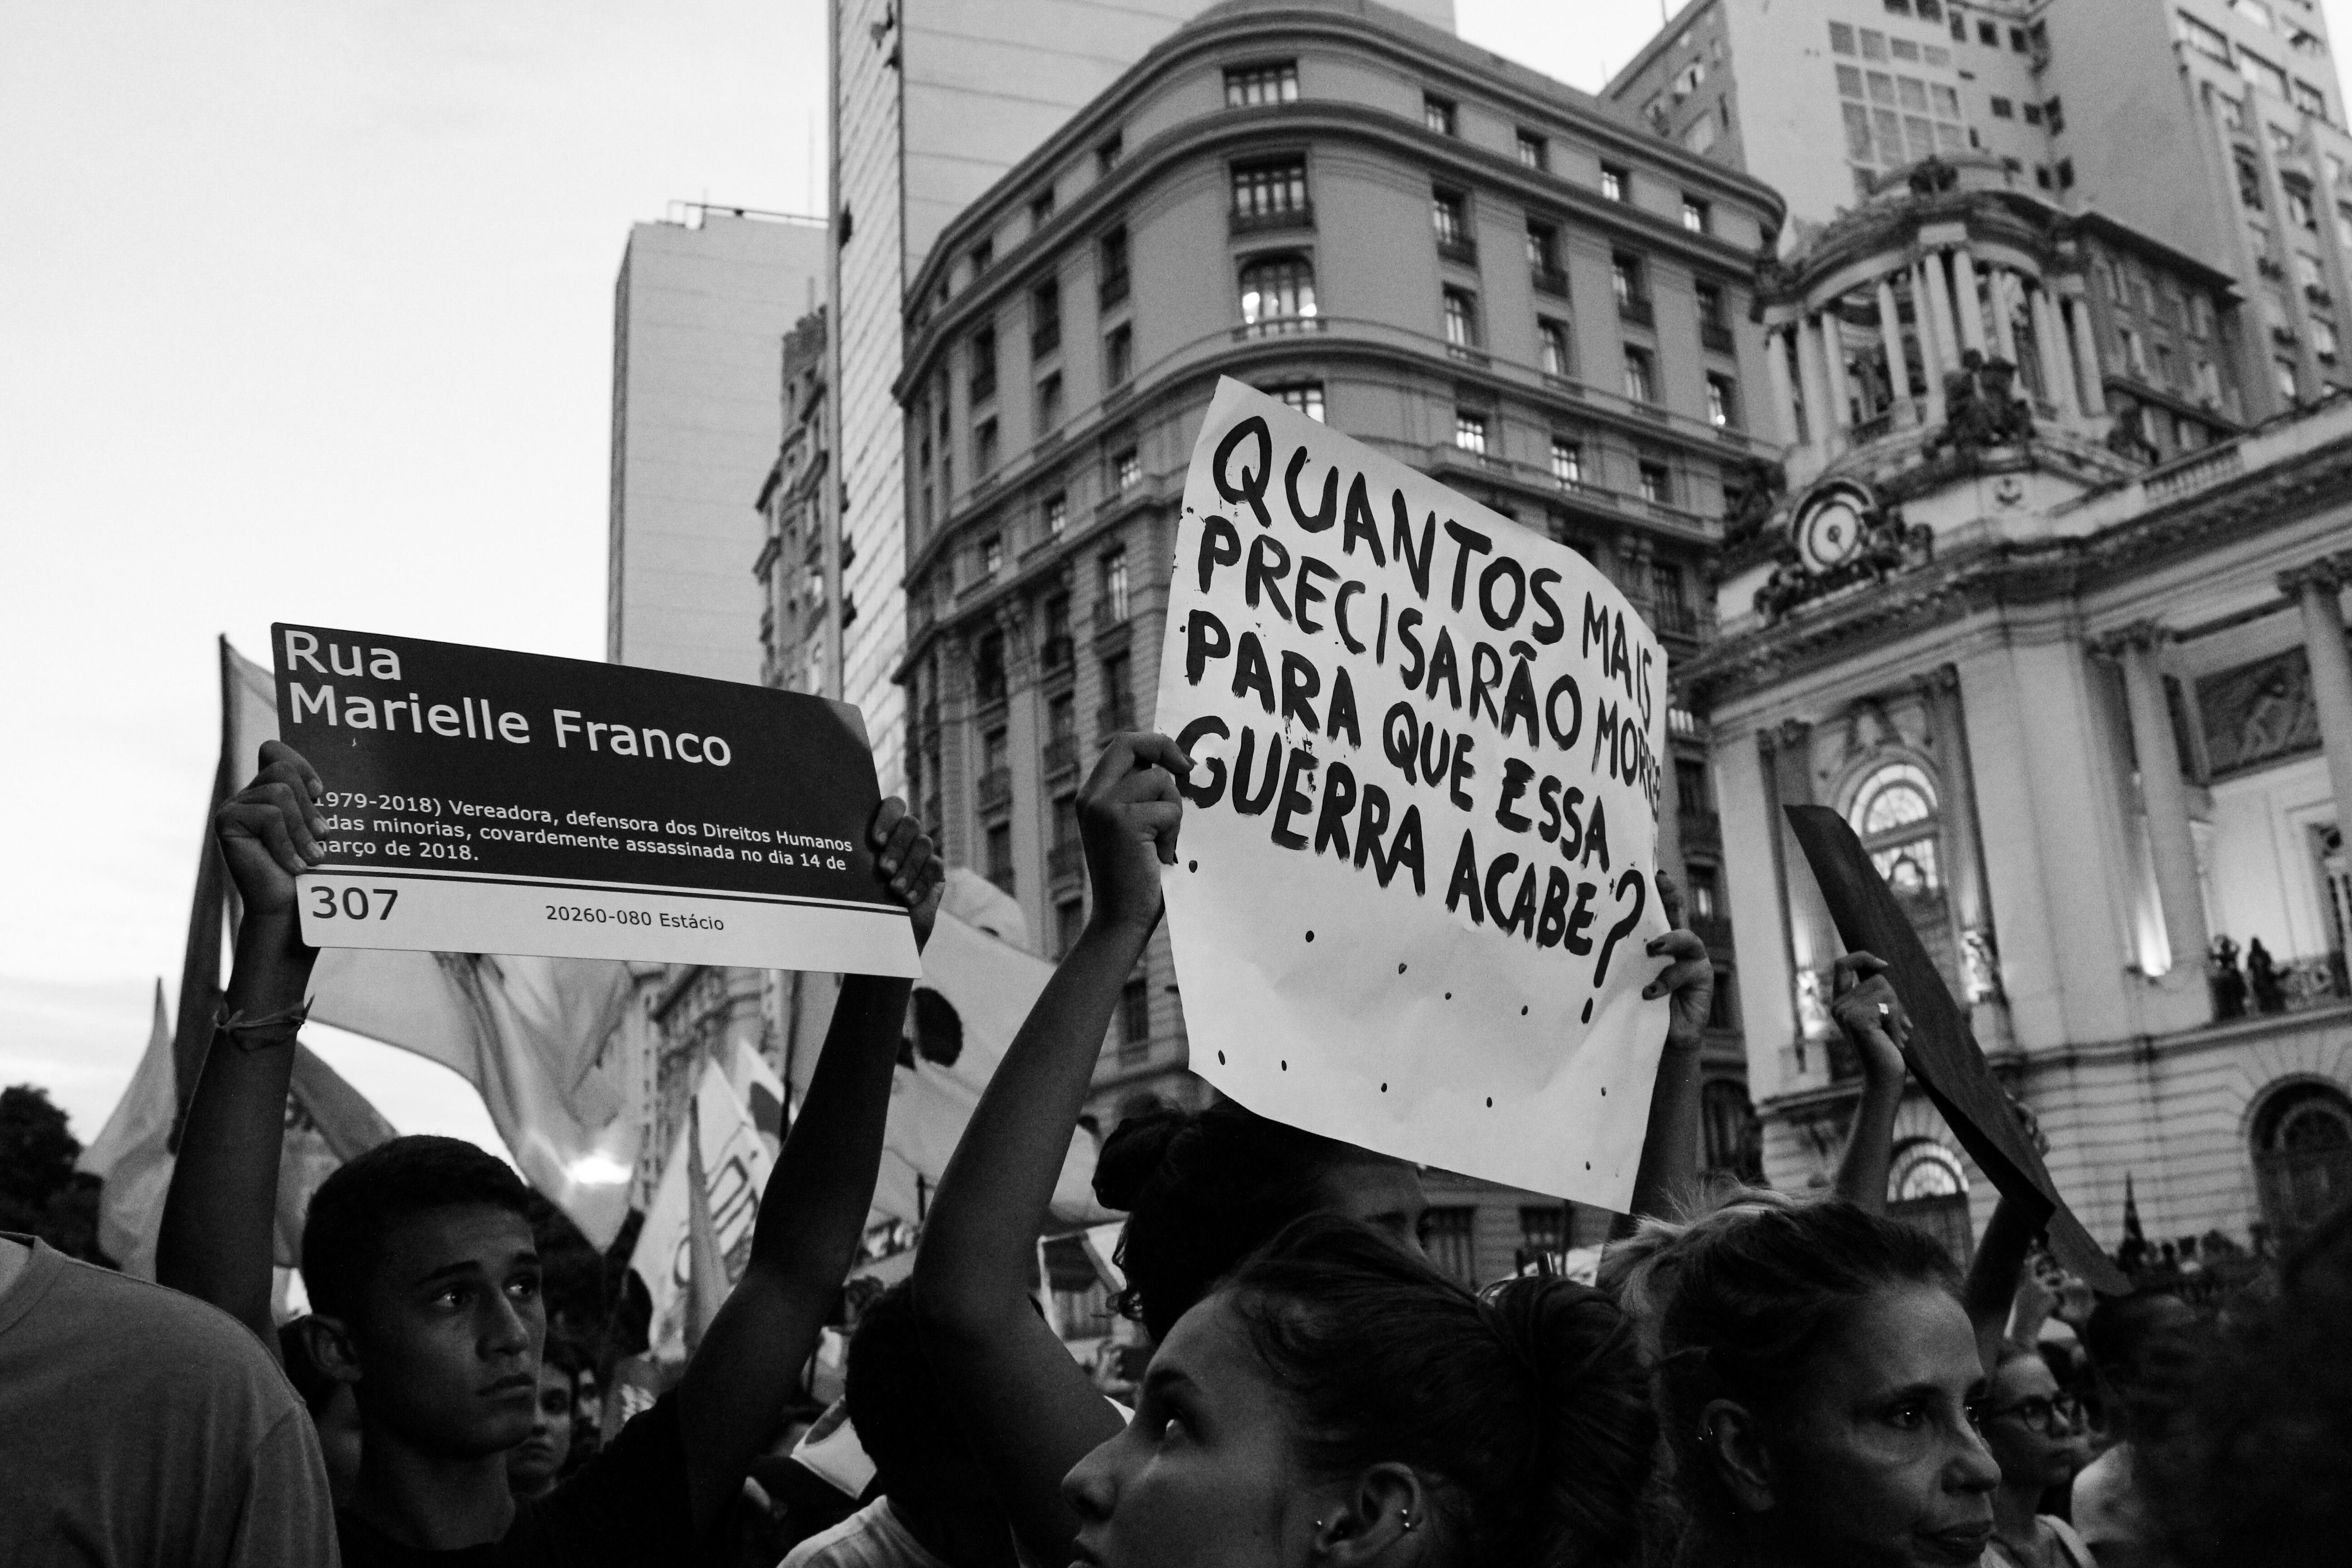 Protesto, em preto e branco, em que manifestantes levantam placas sobre violência contra a população negra.